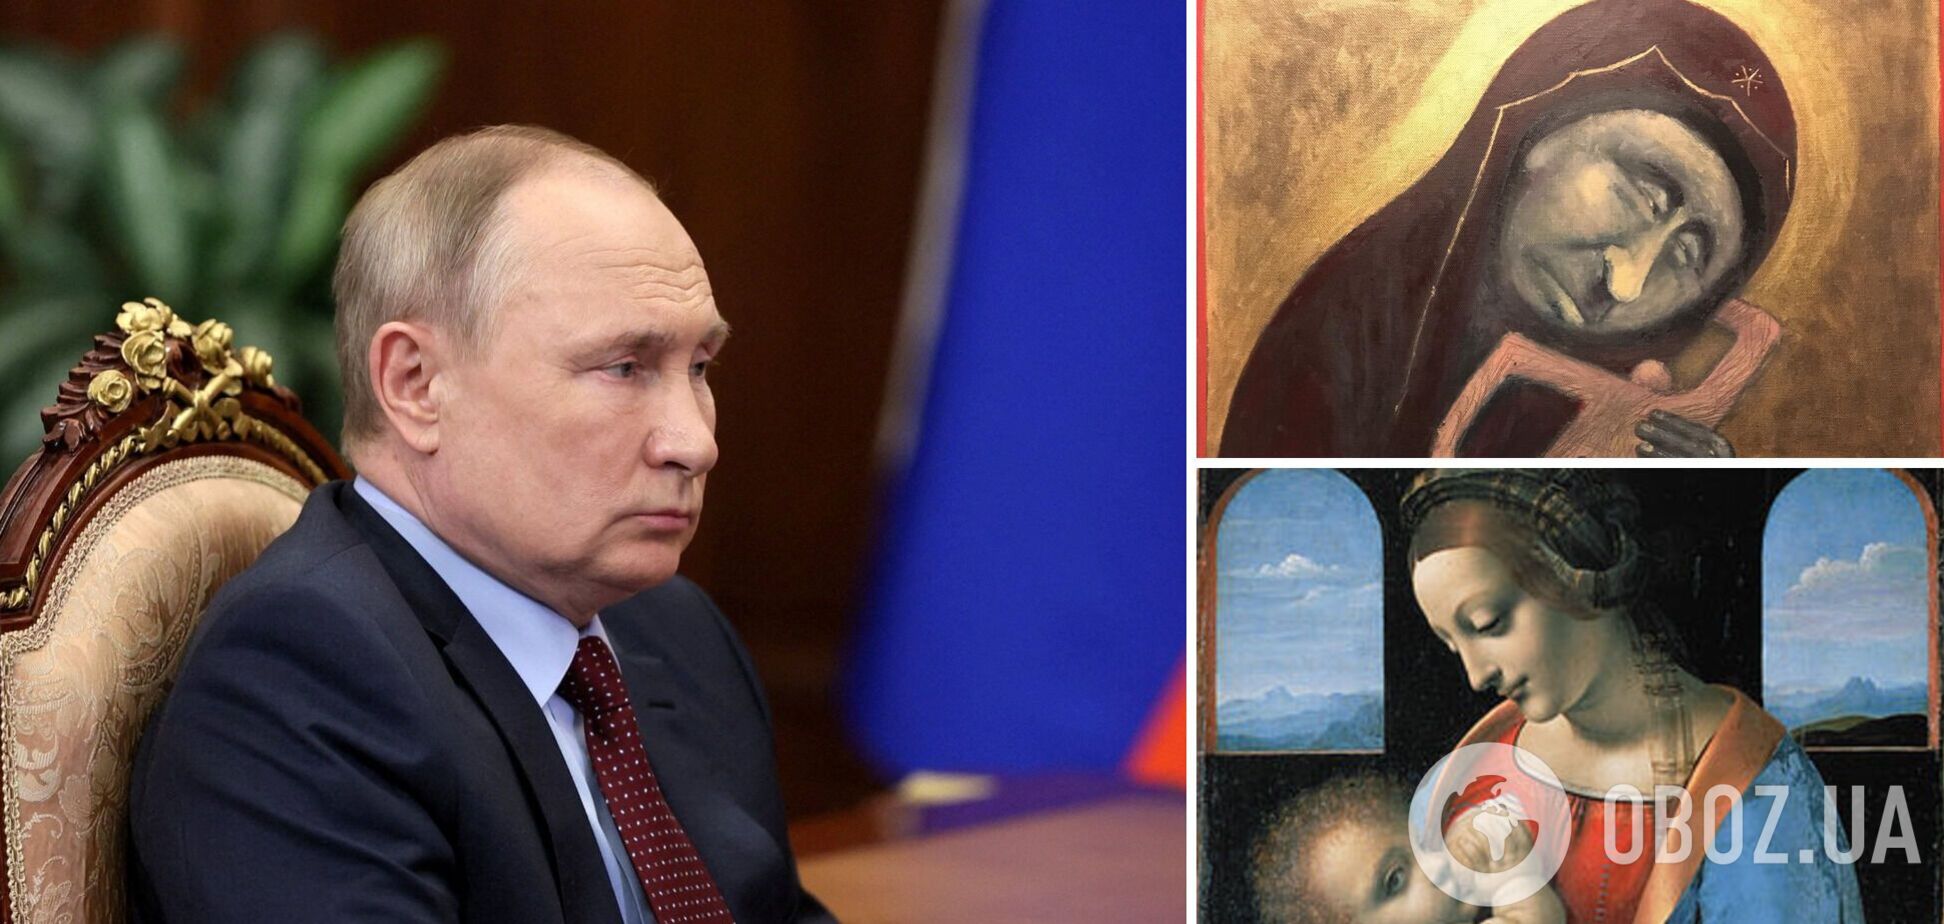 Российский художник нарисовал Путина в образе Мадонны, вскармливающей путинистов. Фото